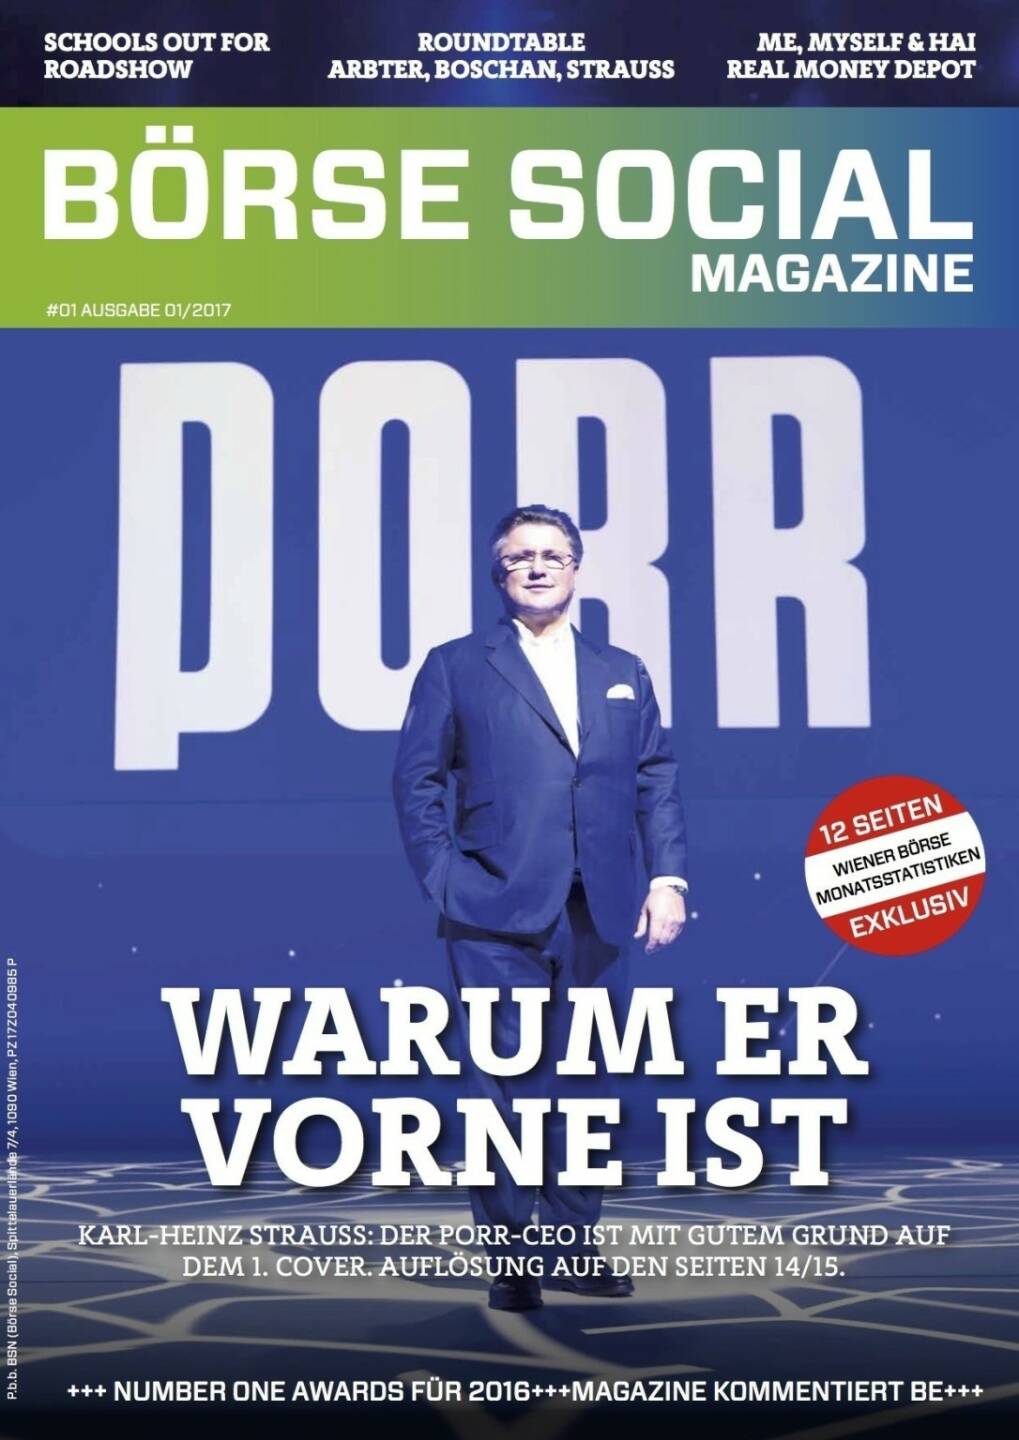 Börse Social Magazine #1 mit Karl-Heinz Strauss, Porr, am Cover